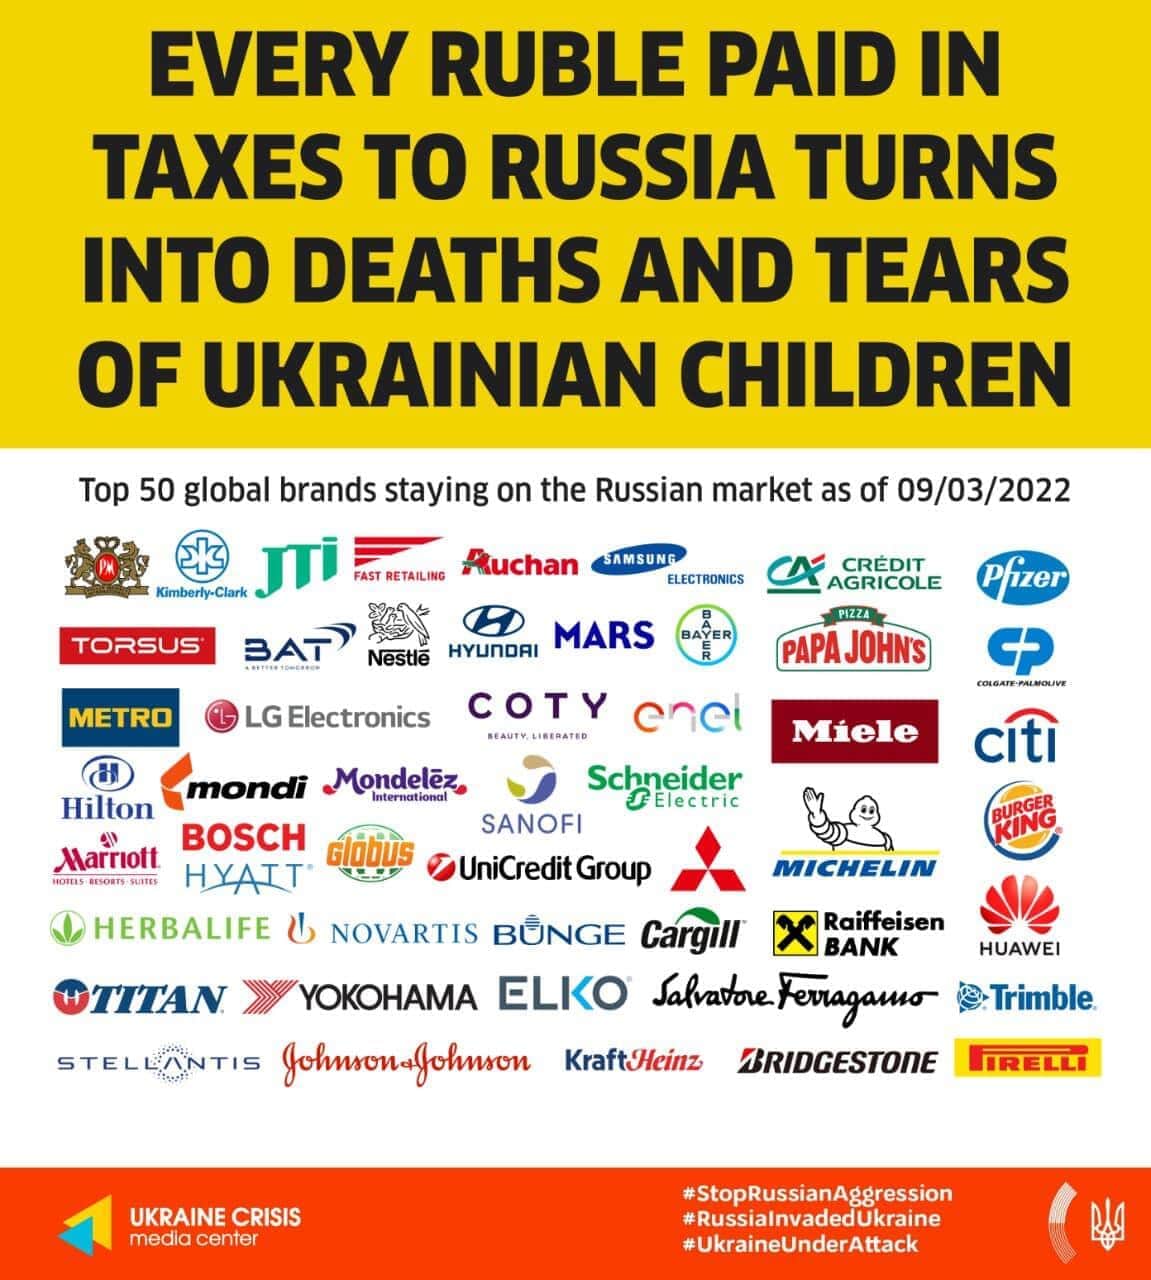 名指しされた50社のリスト（ウクライナ外務省のフェイスブックから）